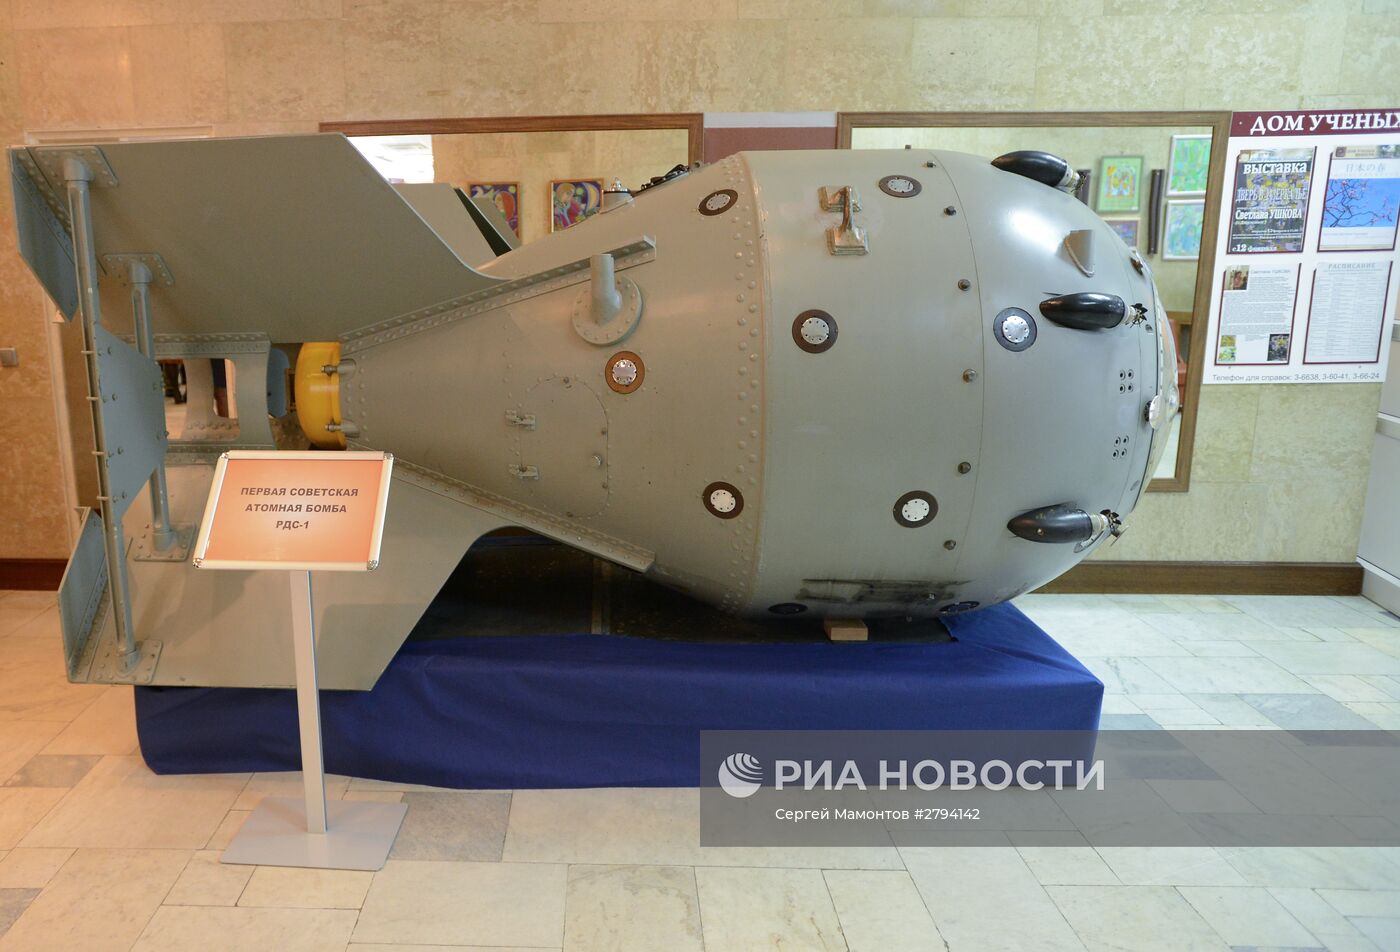 Первая советская атомная бомба РДС-1